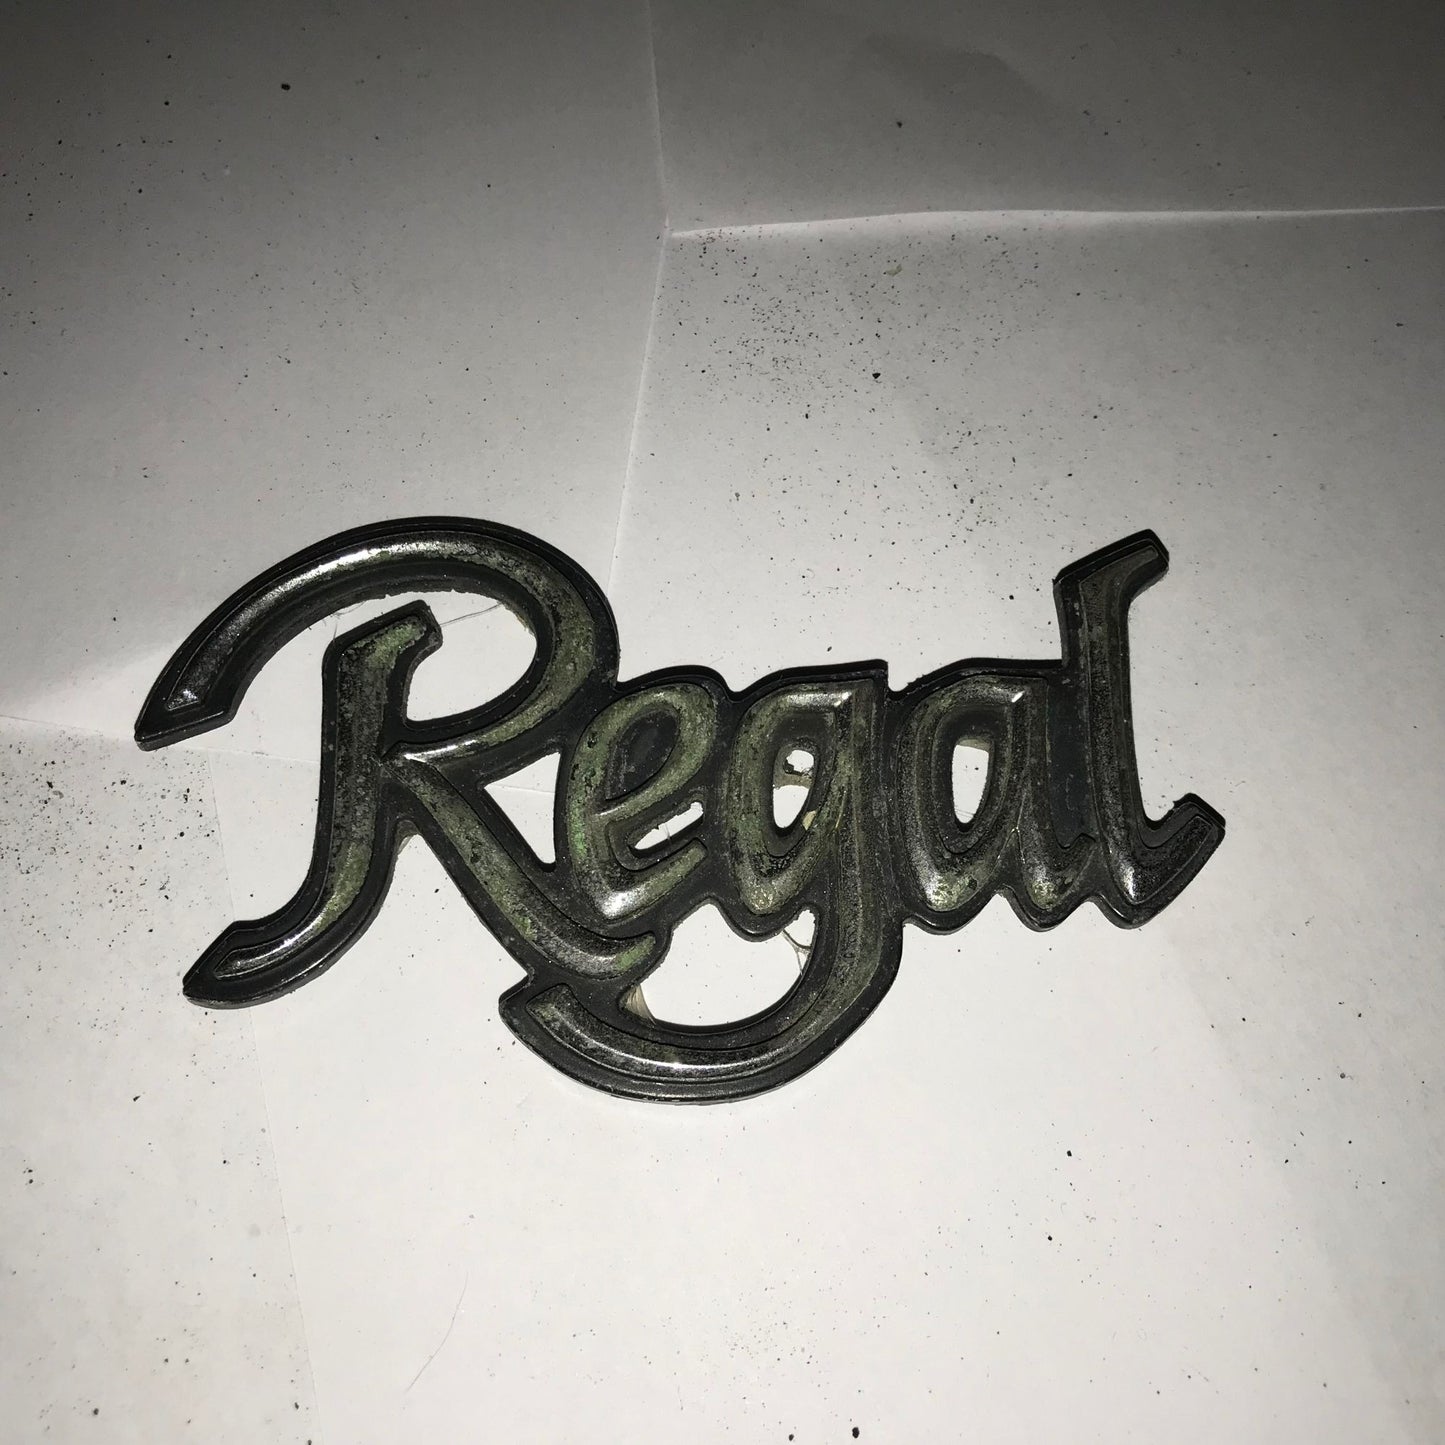 Regal Vehicle Hood Ornament/Auto Patch Emblem